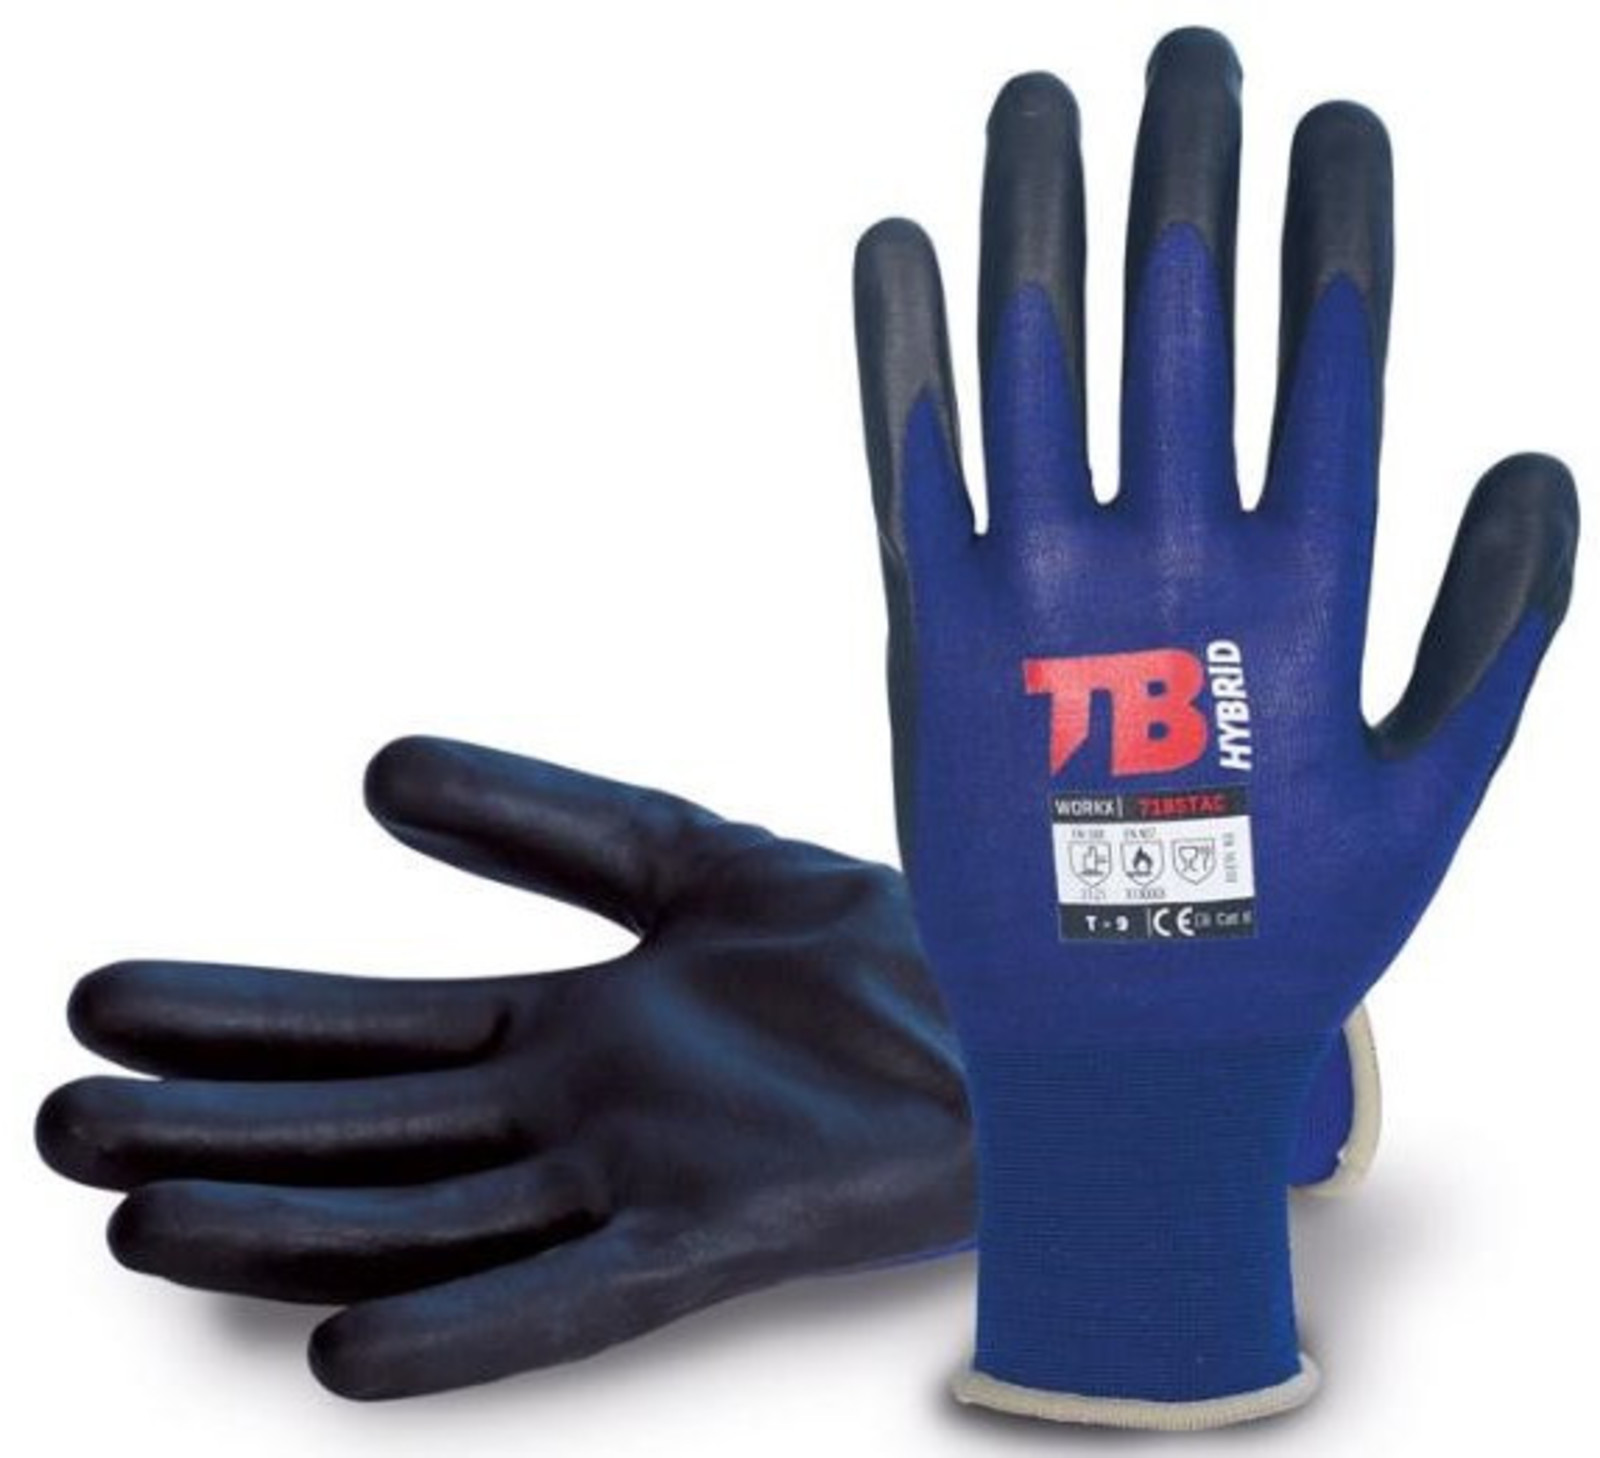 Nylonové rukavice TB 718 Stac - veľkosť: 6/XS